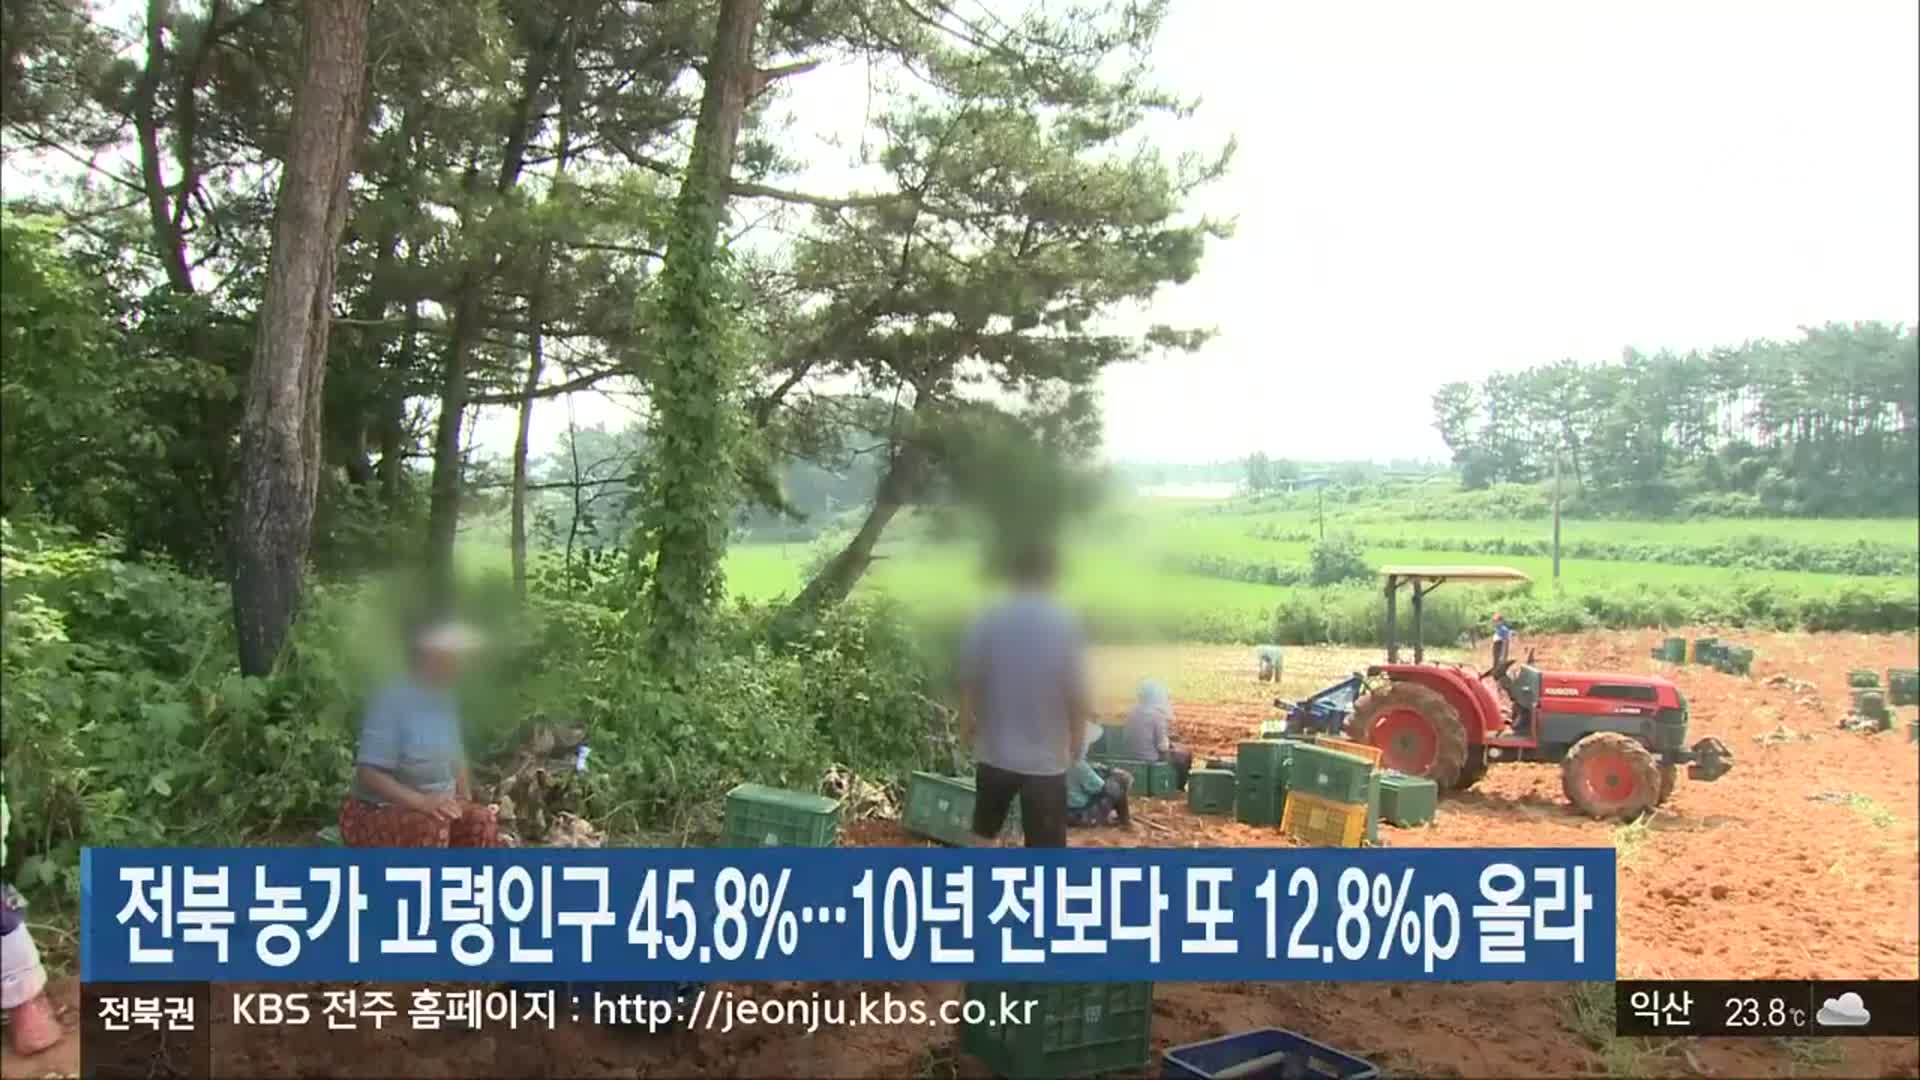 전북 농가 고령인구 45.8%…10년 전보다 또 12.8%p 올라